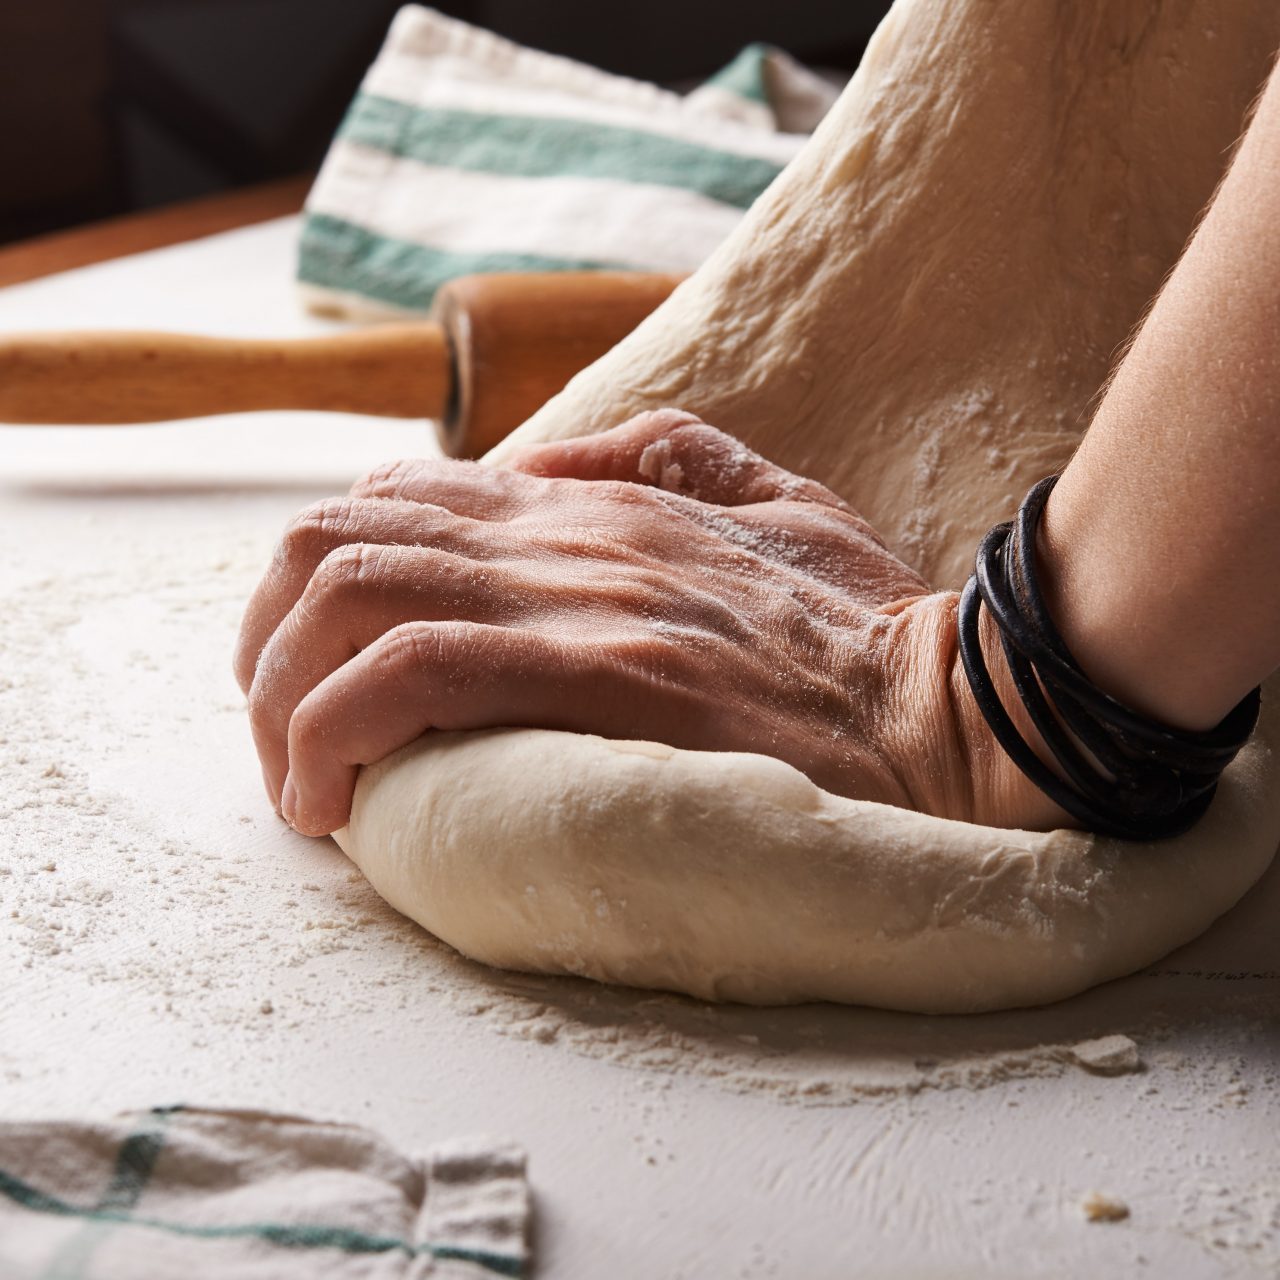 A hand kneading dough on a table